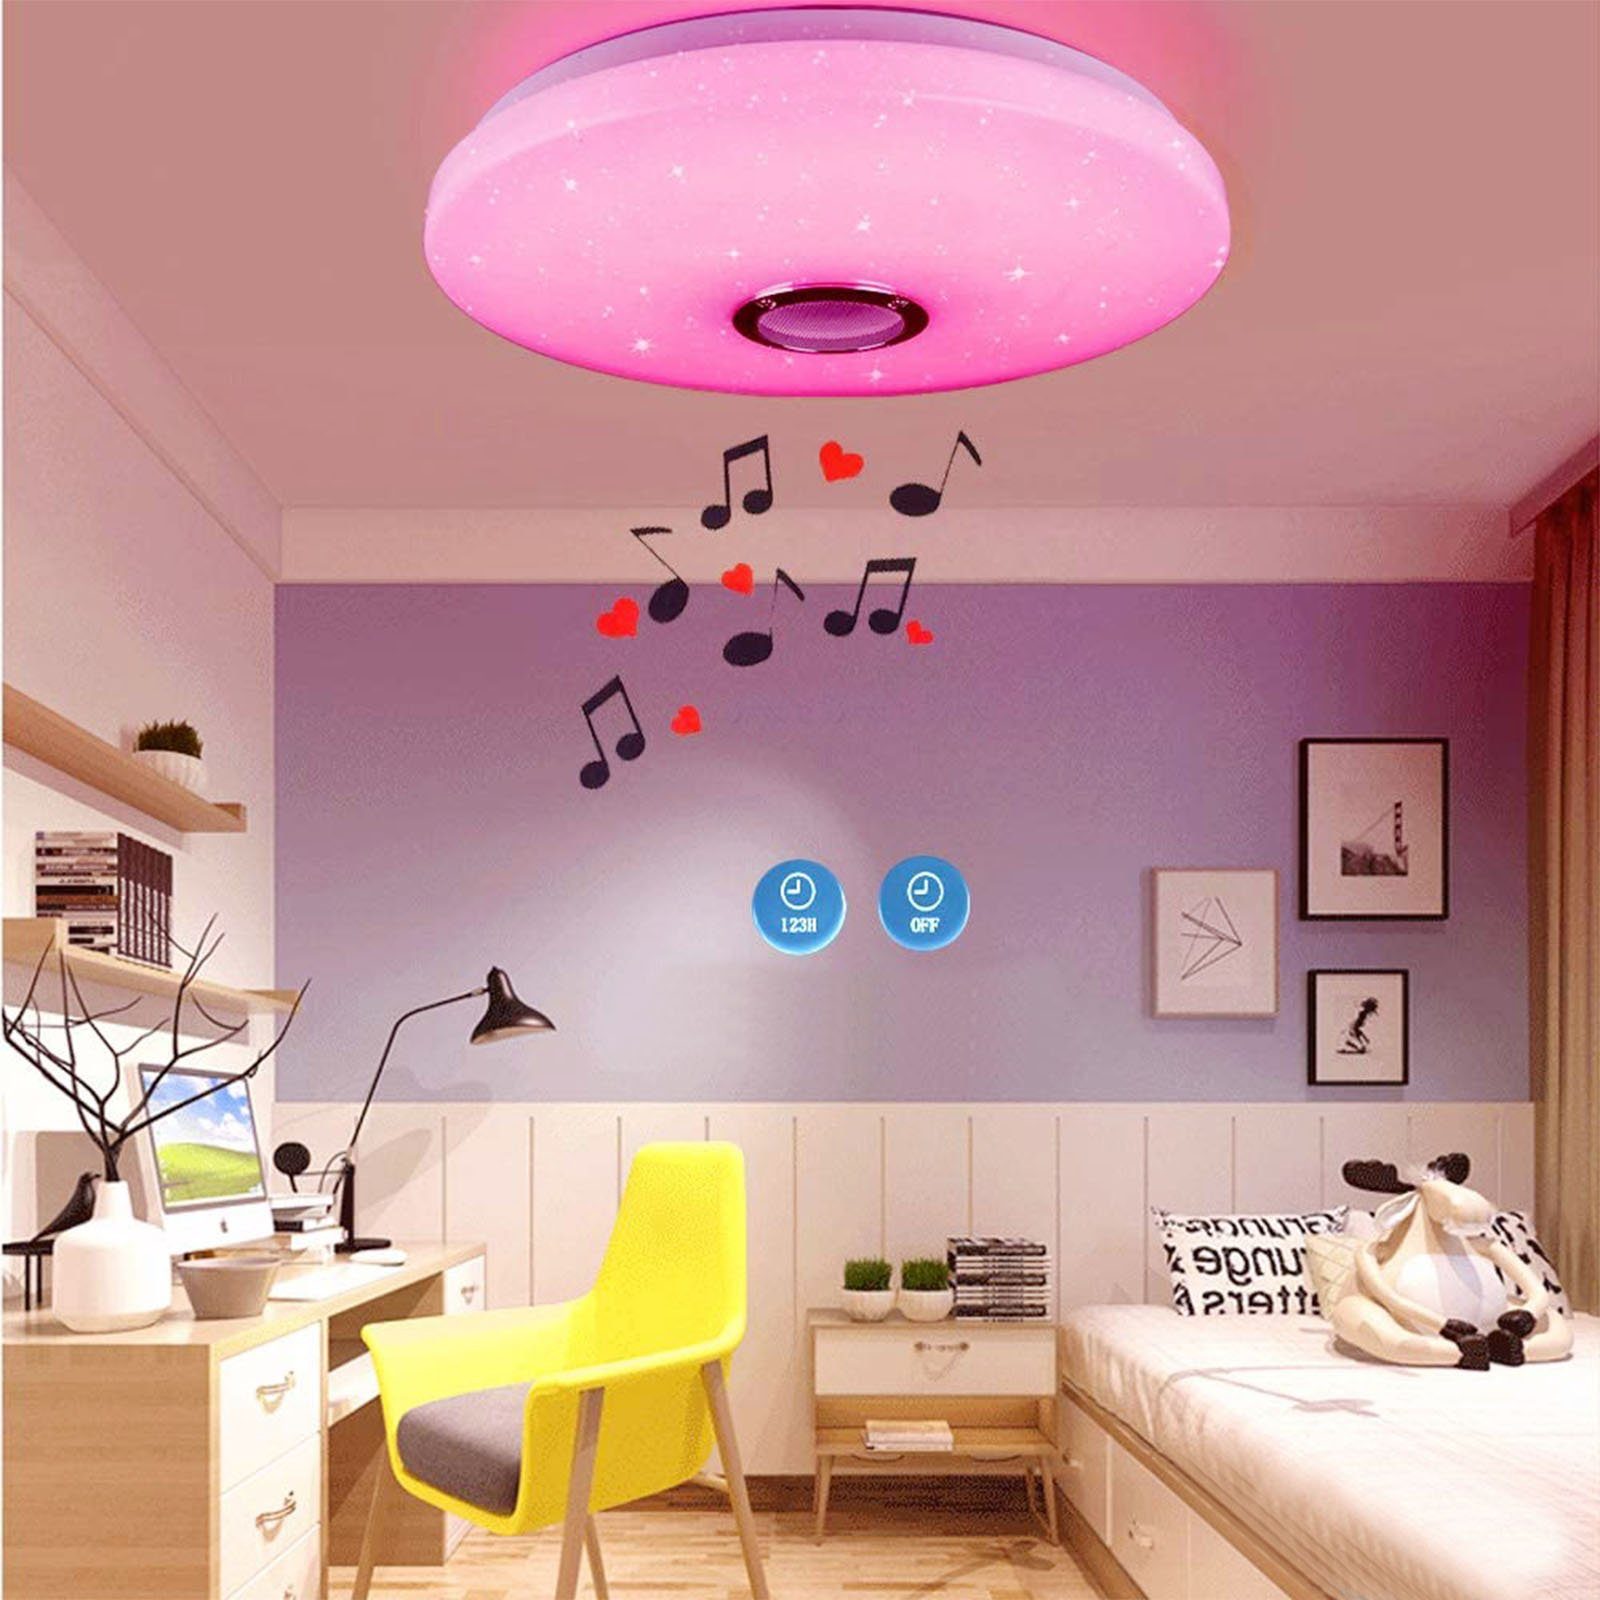 38W/60W oyajia fest 5cm 30cm (3000~6500K), RGB Fernbedienung mit Lampe LED 36W Dimmbar Deckenlampe Bluetooth RGB Lautsprecher, x Farbwechsel Deckenleuchte Wohnzimmer /APP-Steuerung, integriert, Schlafzimmer mit LED Dimmbar, -